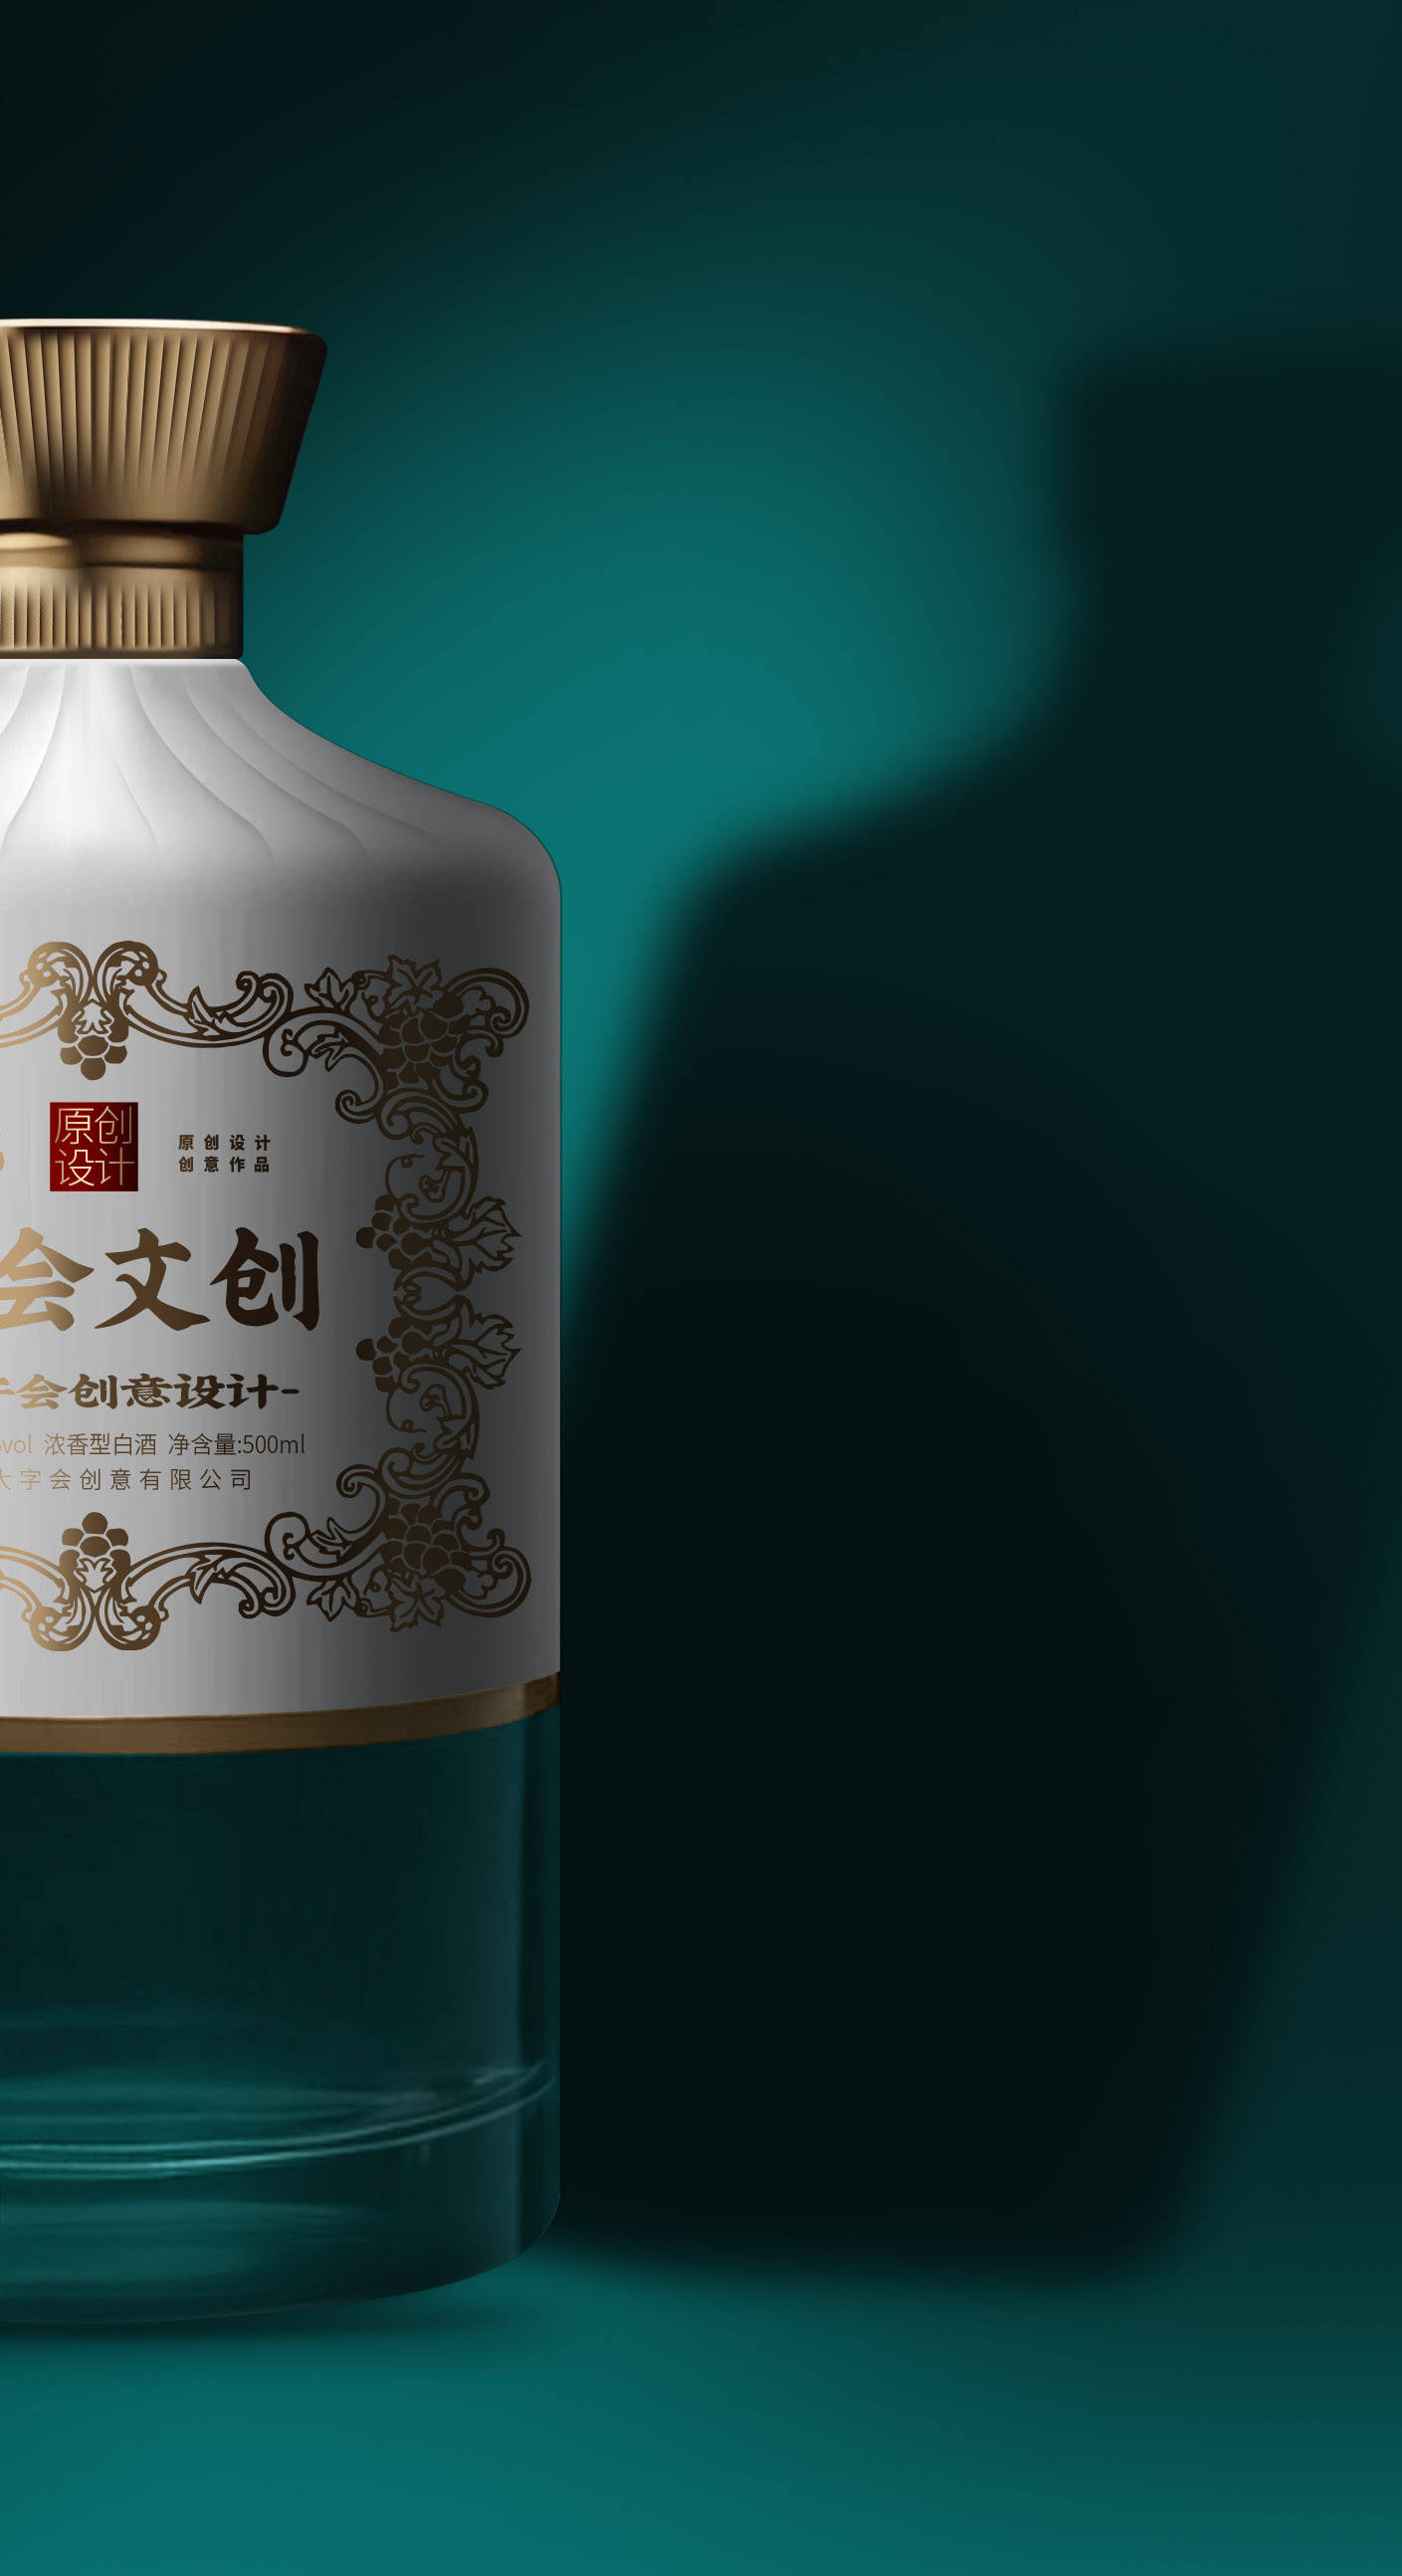 新中式文化白酒包装设计趋势与创新